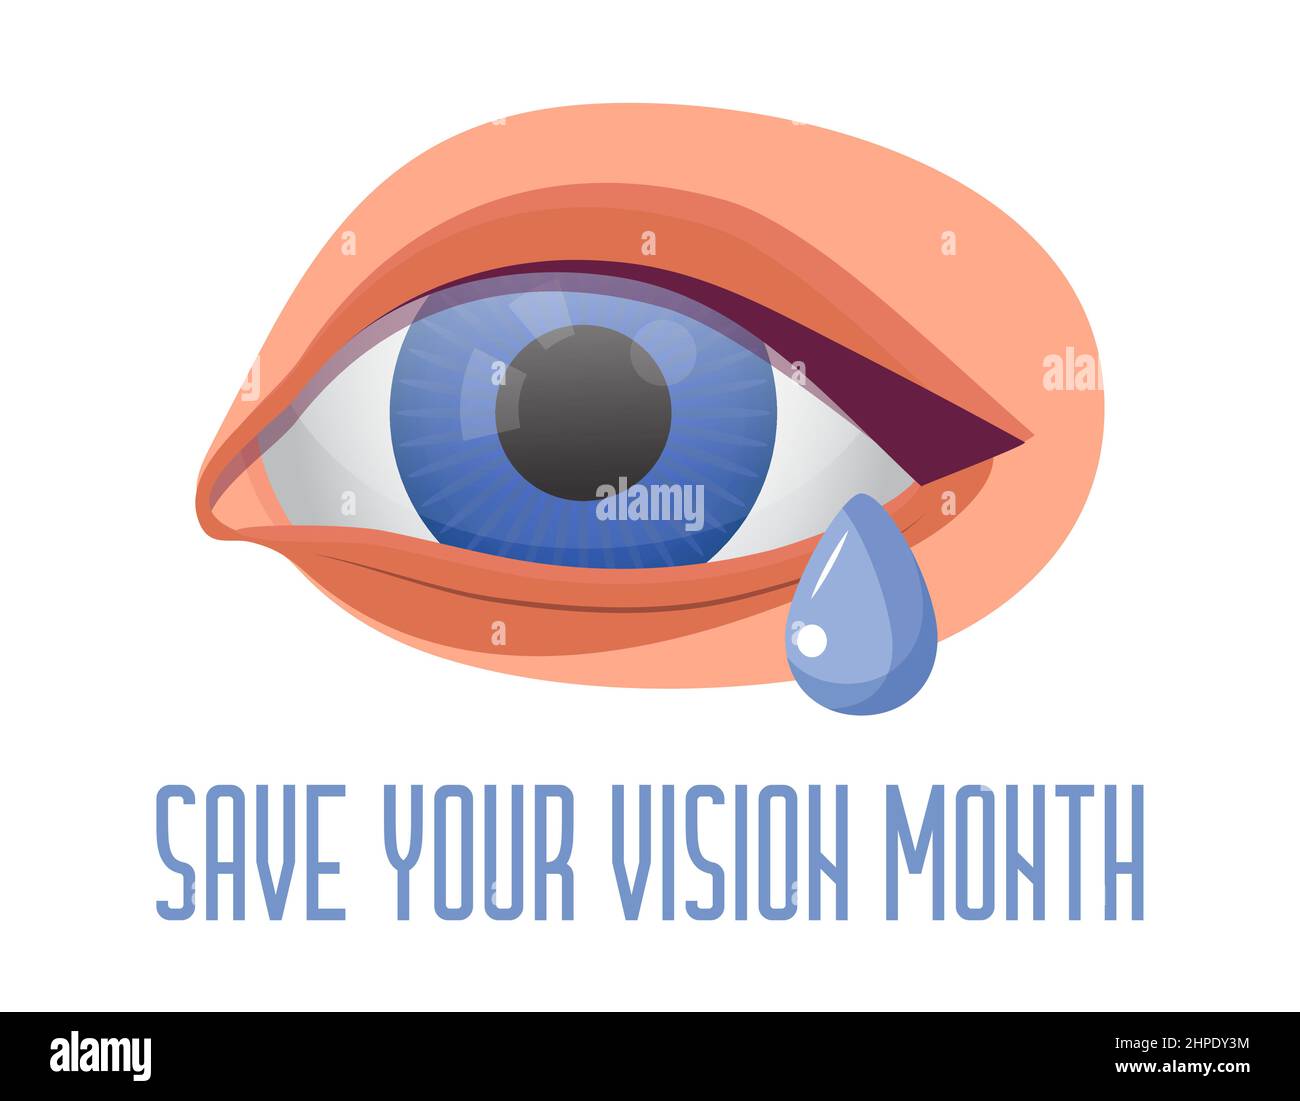 Speichern Sie Ihre Vision-Monat-Konzept-Vektor. Die Veranstaltung wird im März gefeiert. Augenarzt Augenuntersuchung Abbildung. Augenillustration für Heilung Stock Vektor